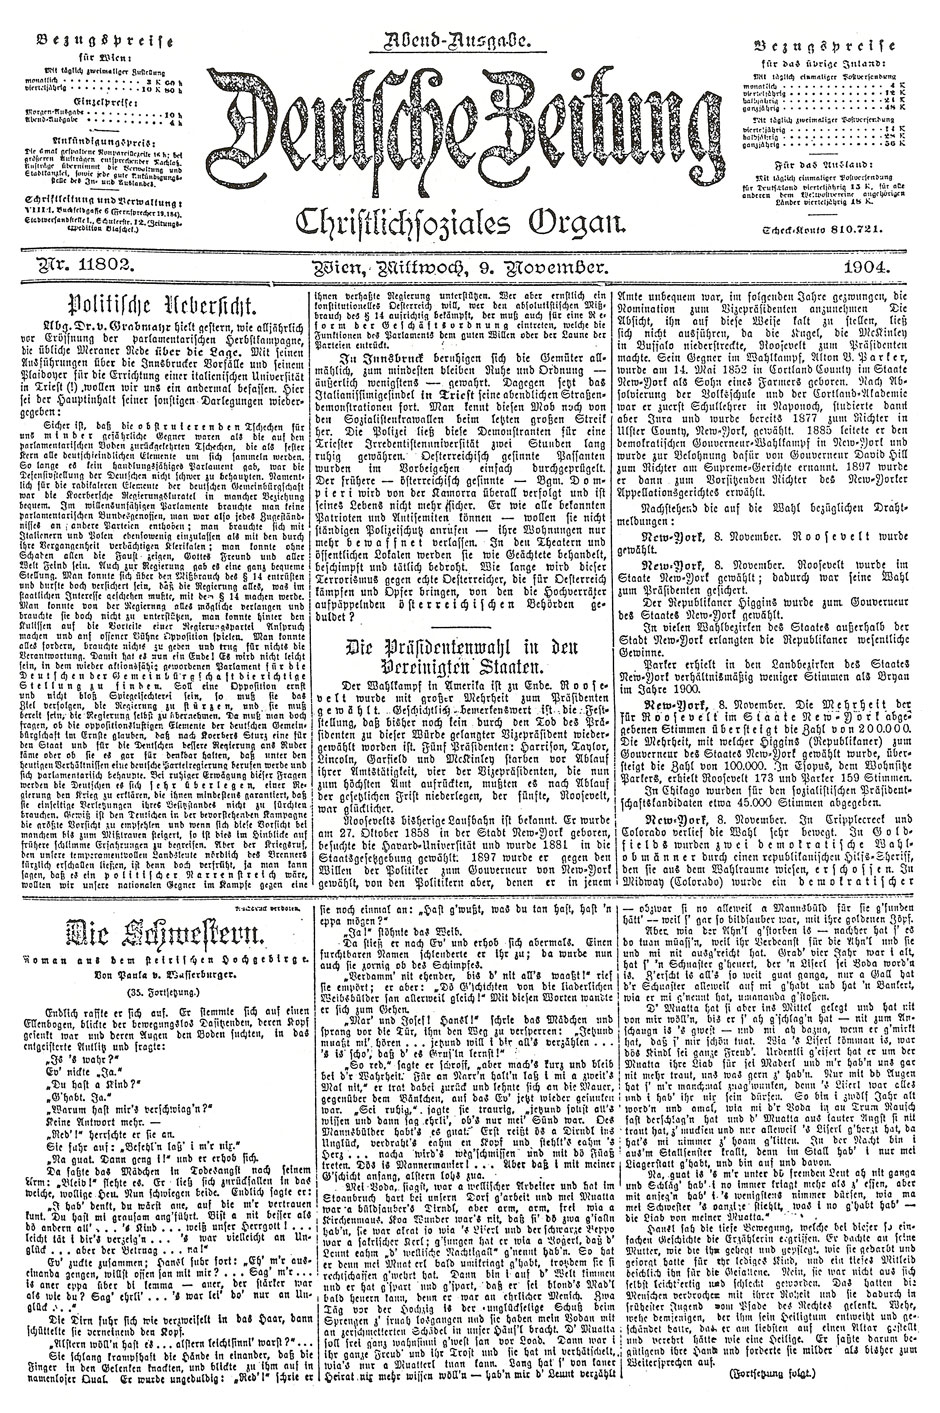 Deutsche Zeitung, Christlichsoziales Organ, 9. November 1904; Deckblatt